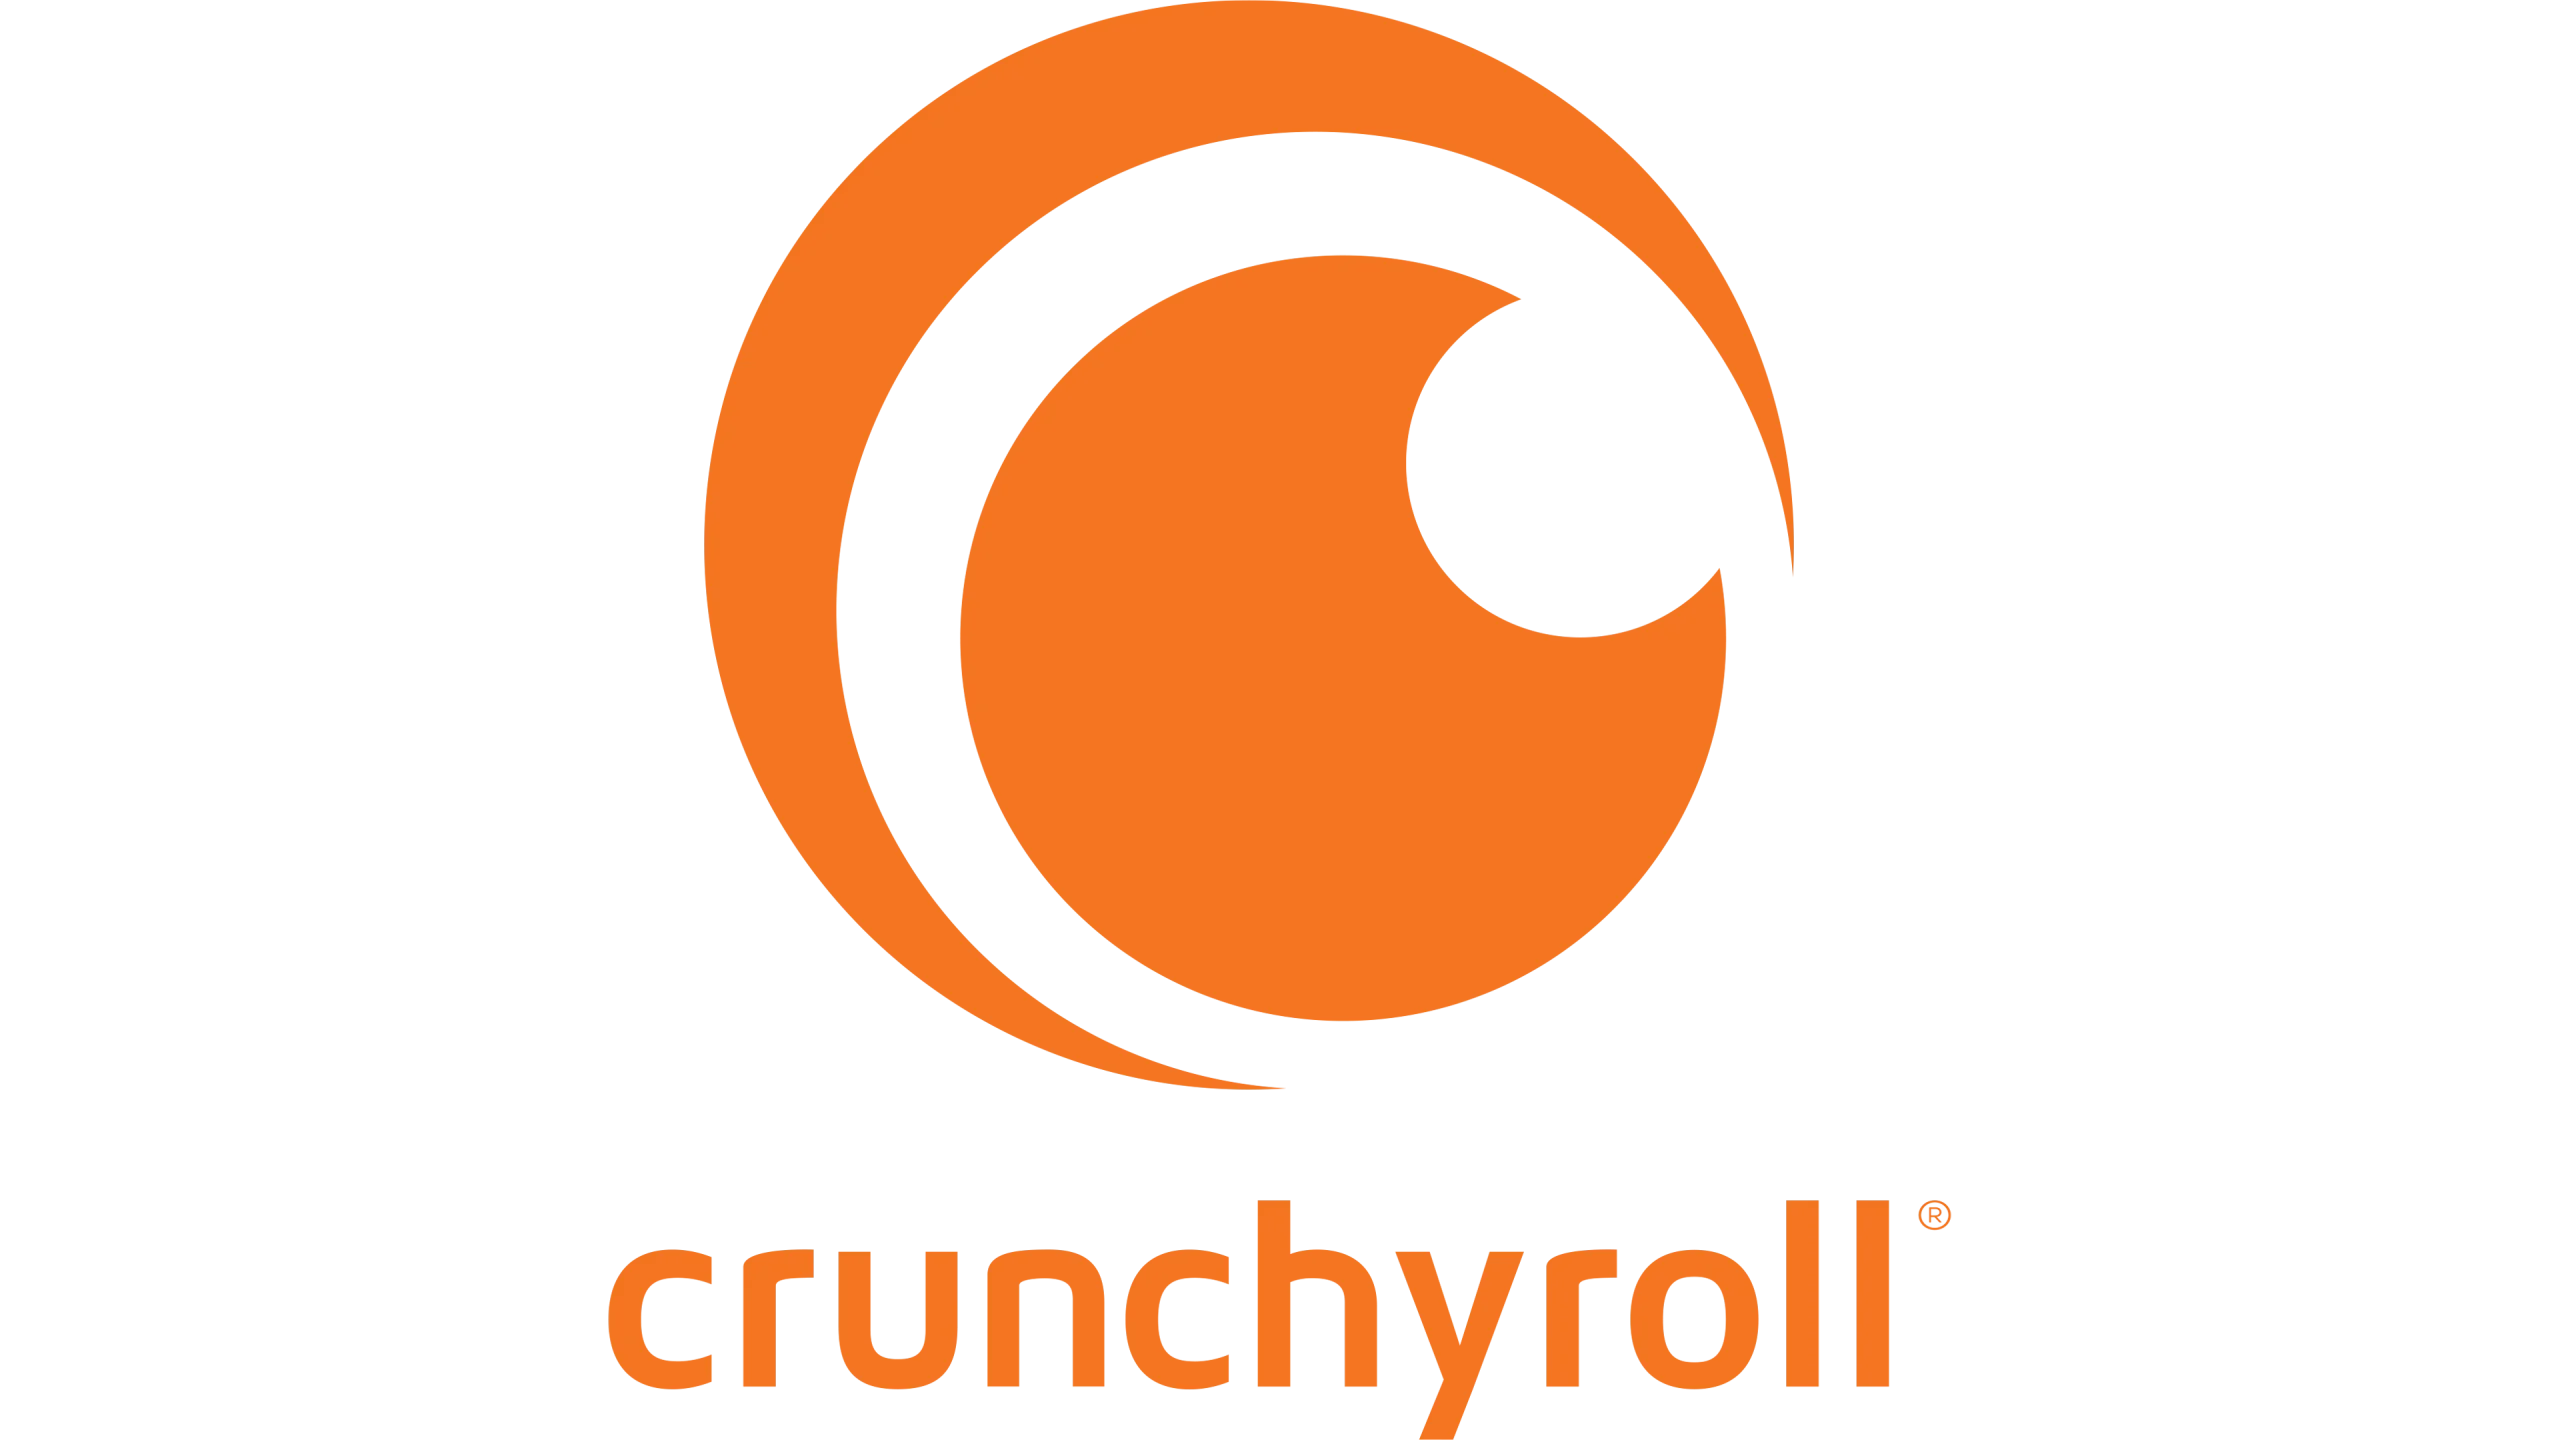 Crunchyrol logo PNG1 scaled